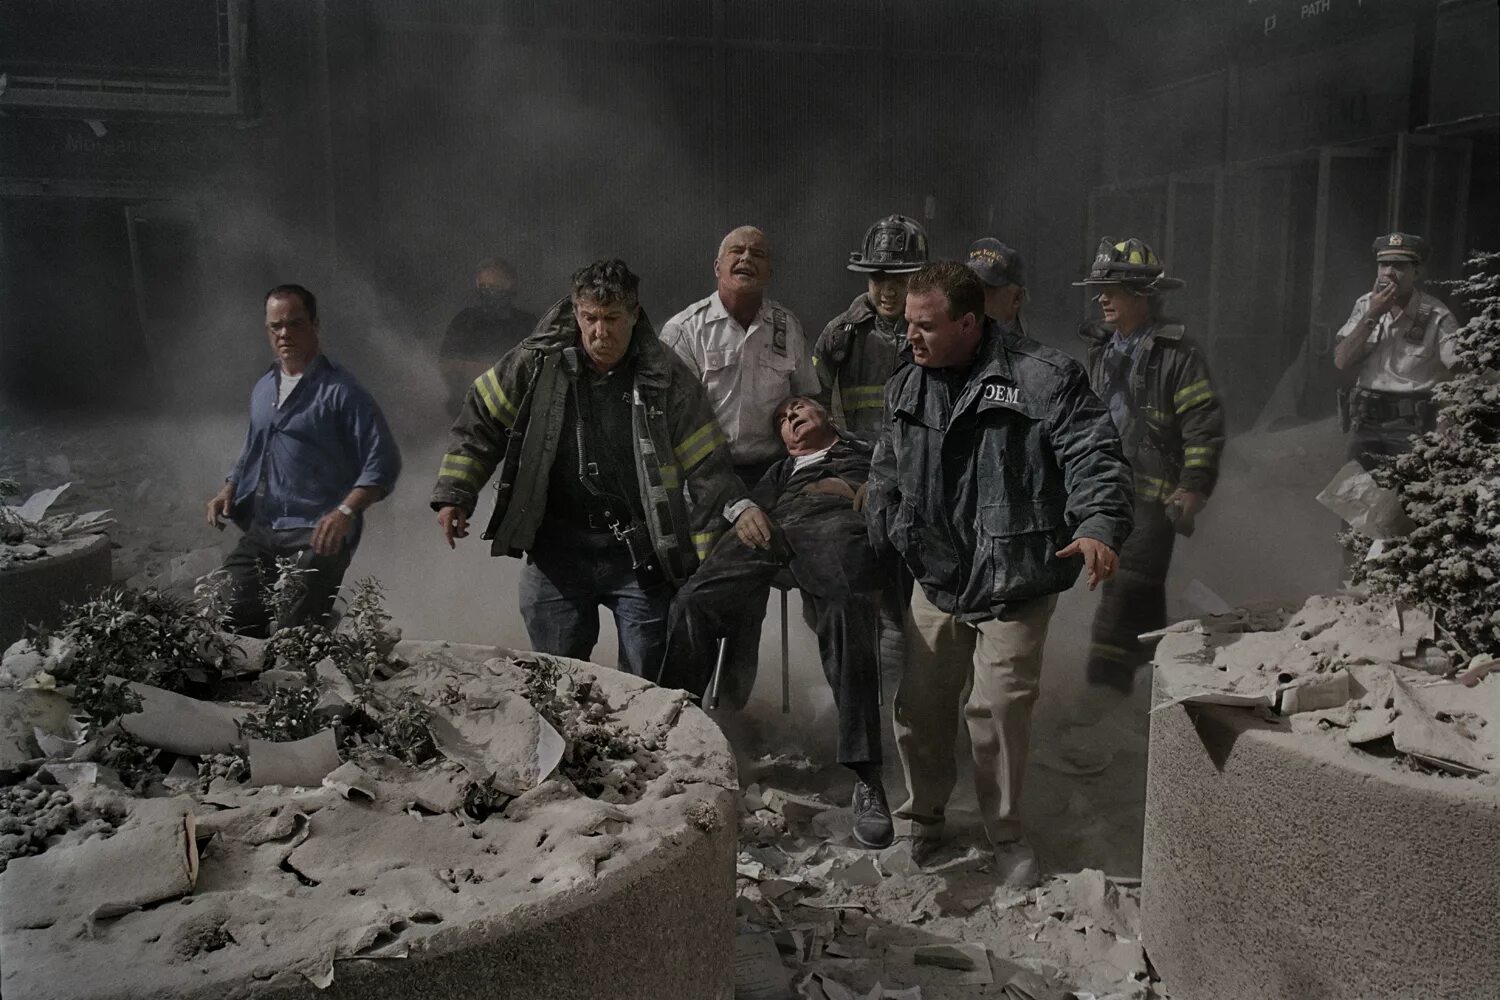 Количество жертв теракта 11 сентября. Башни-Близнецы 11 сентября 2001. Спасатели 11 сентября 2001. Жертвы 11 сентября 2001 года. Башни Близнецы 11 сентября жертвы.